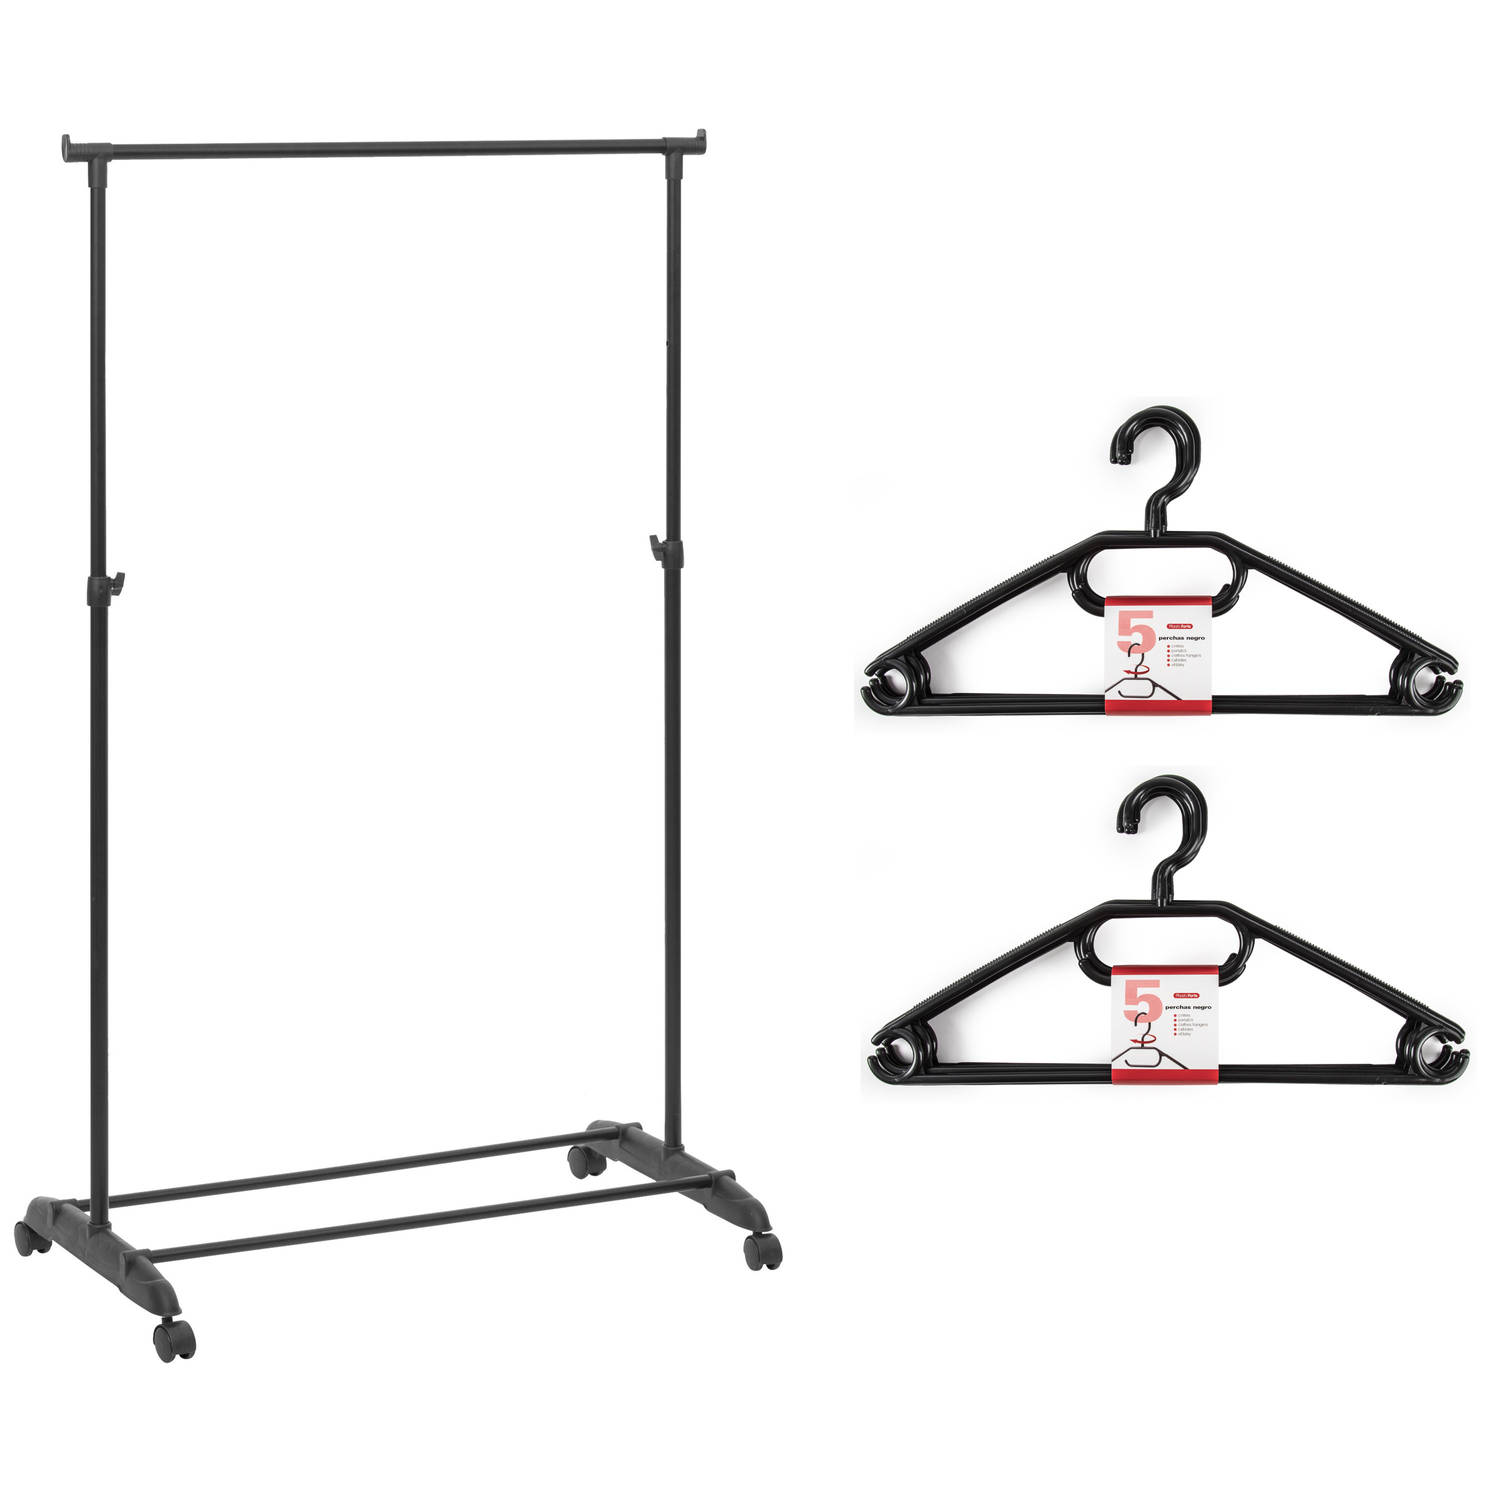 Kledingrek met kleding hangers enkele stang kunststof zwart 80 x 42 x 160 cm Kledingrekken